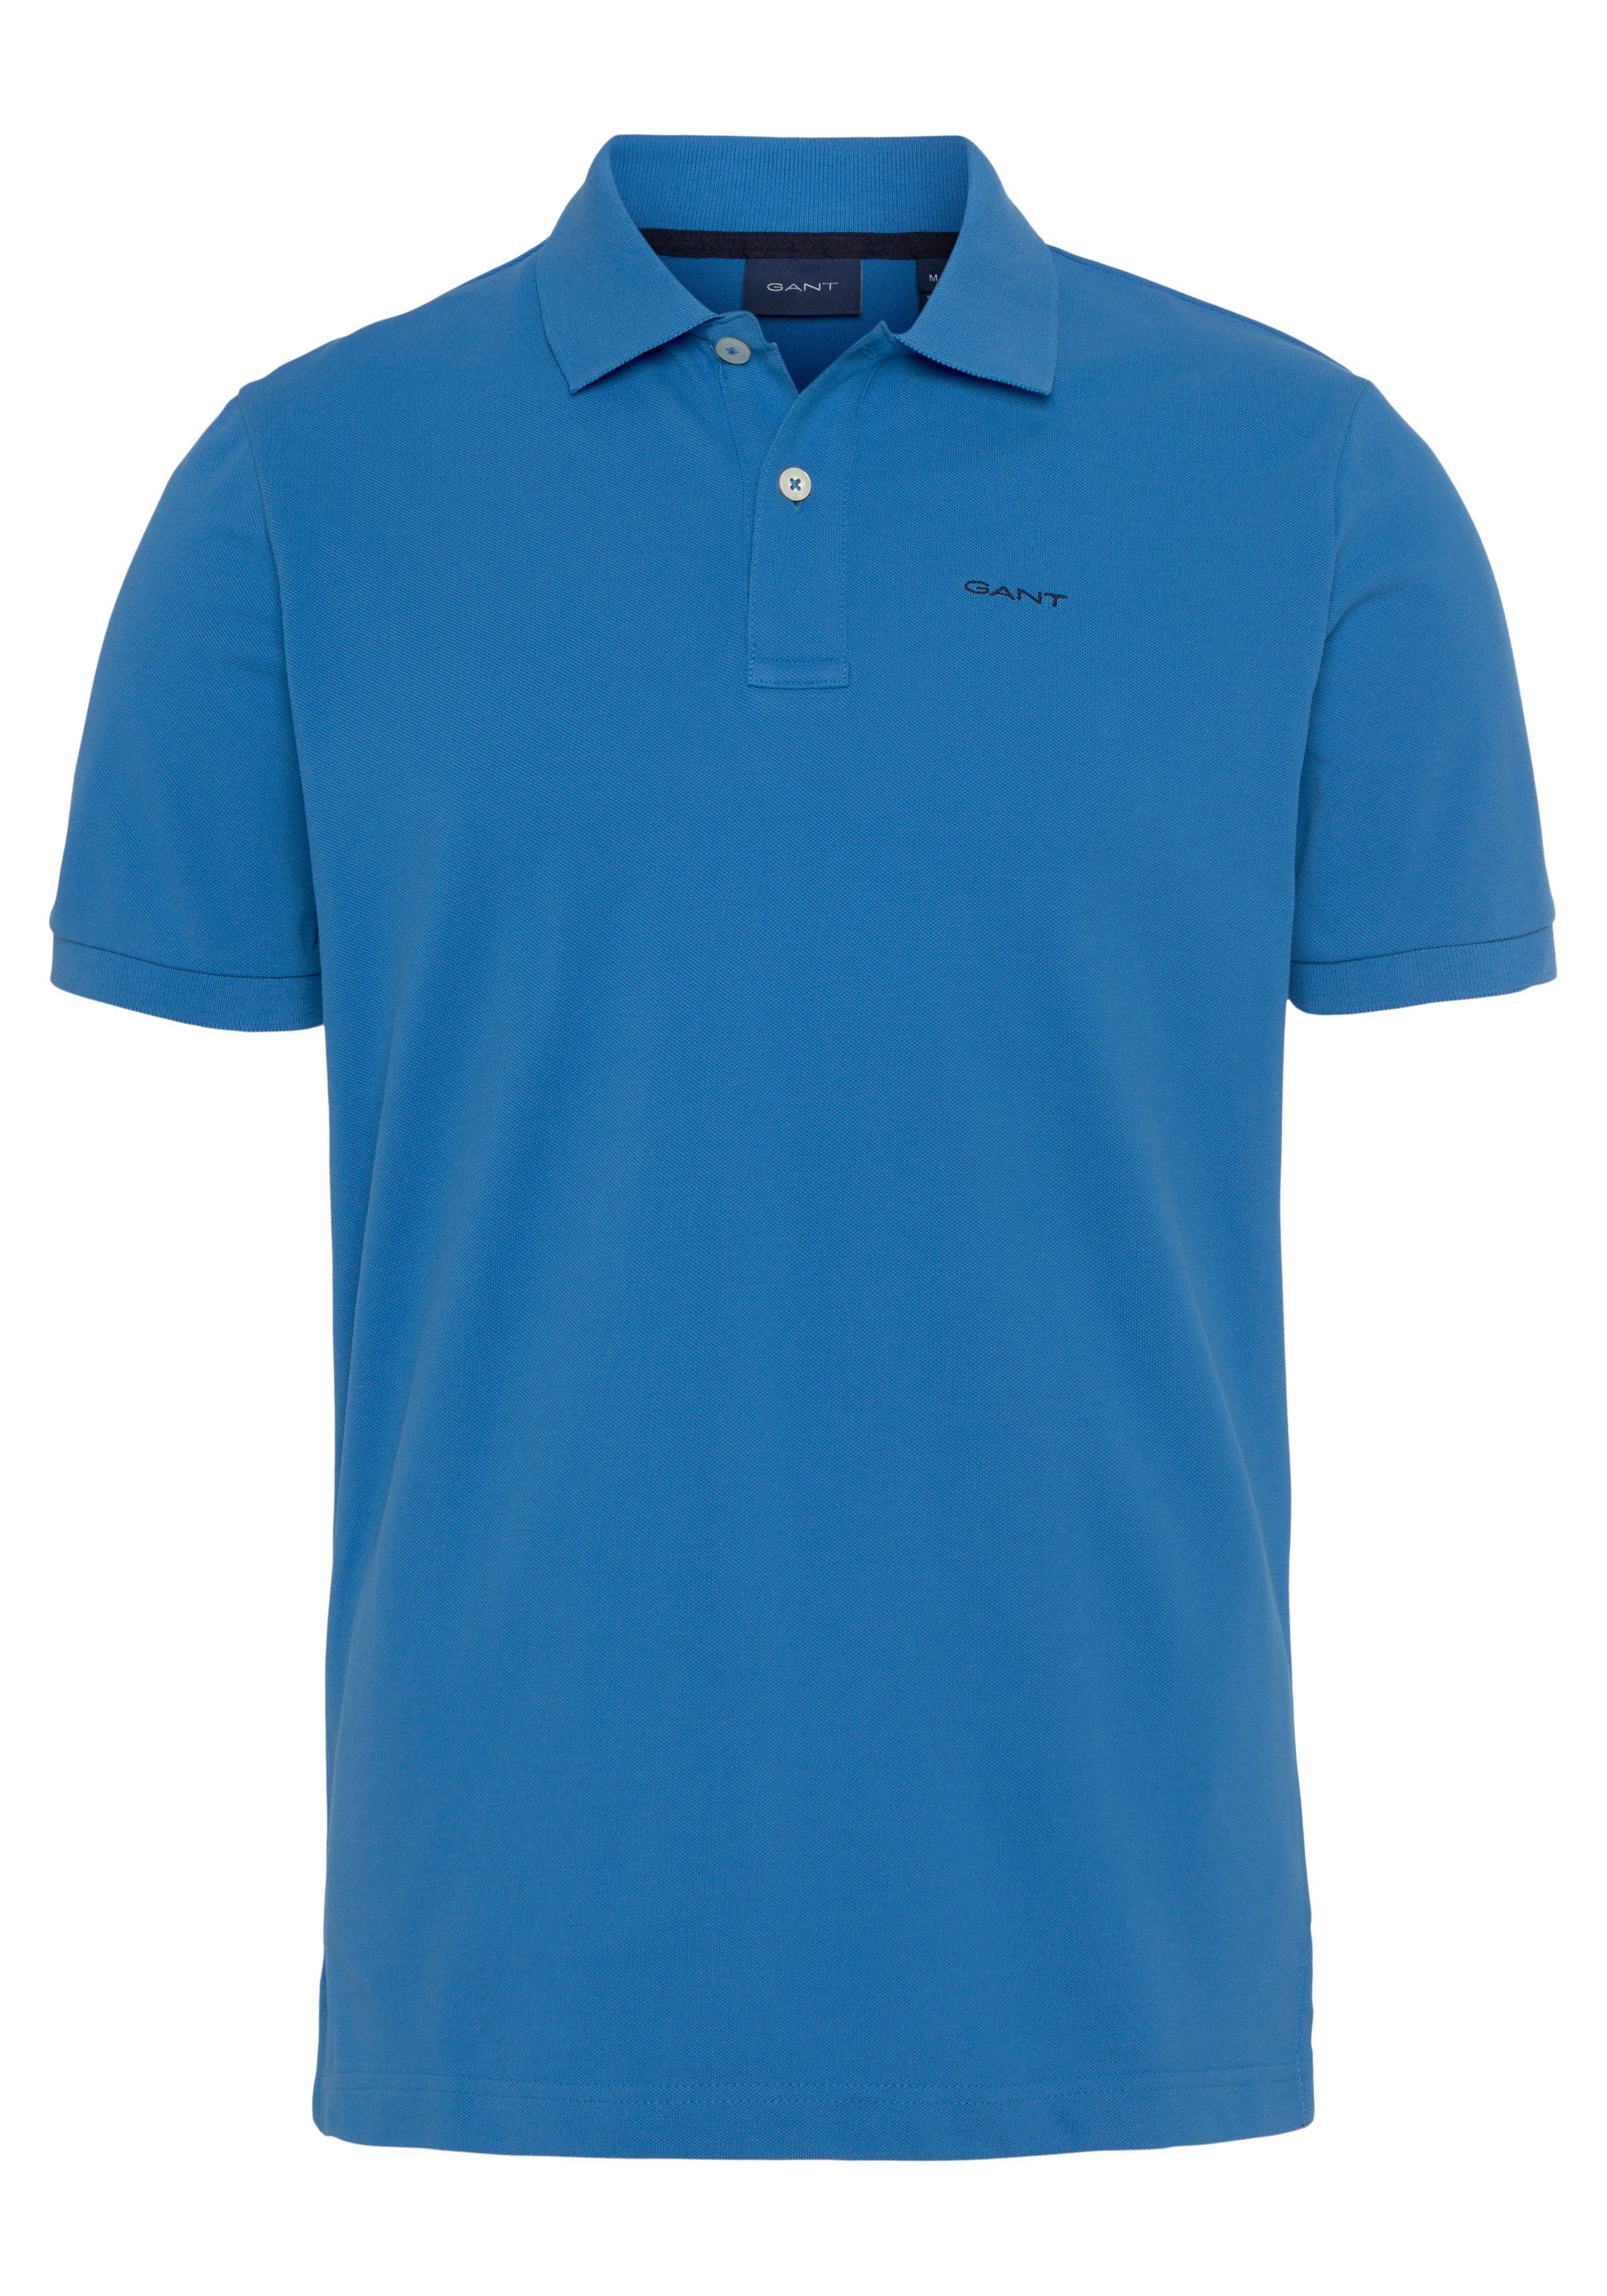 Regular Piqué-Polo Casual, RUGGER MD. Qualität day blue Premium KA Smart Fit, Shirt, Gant Poloshirt PIQUE